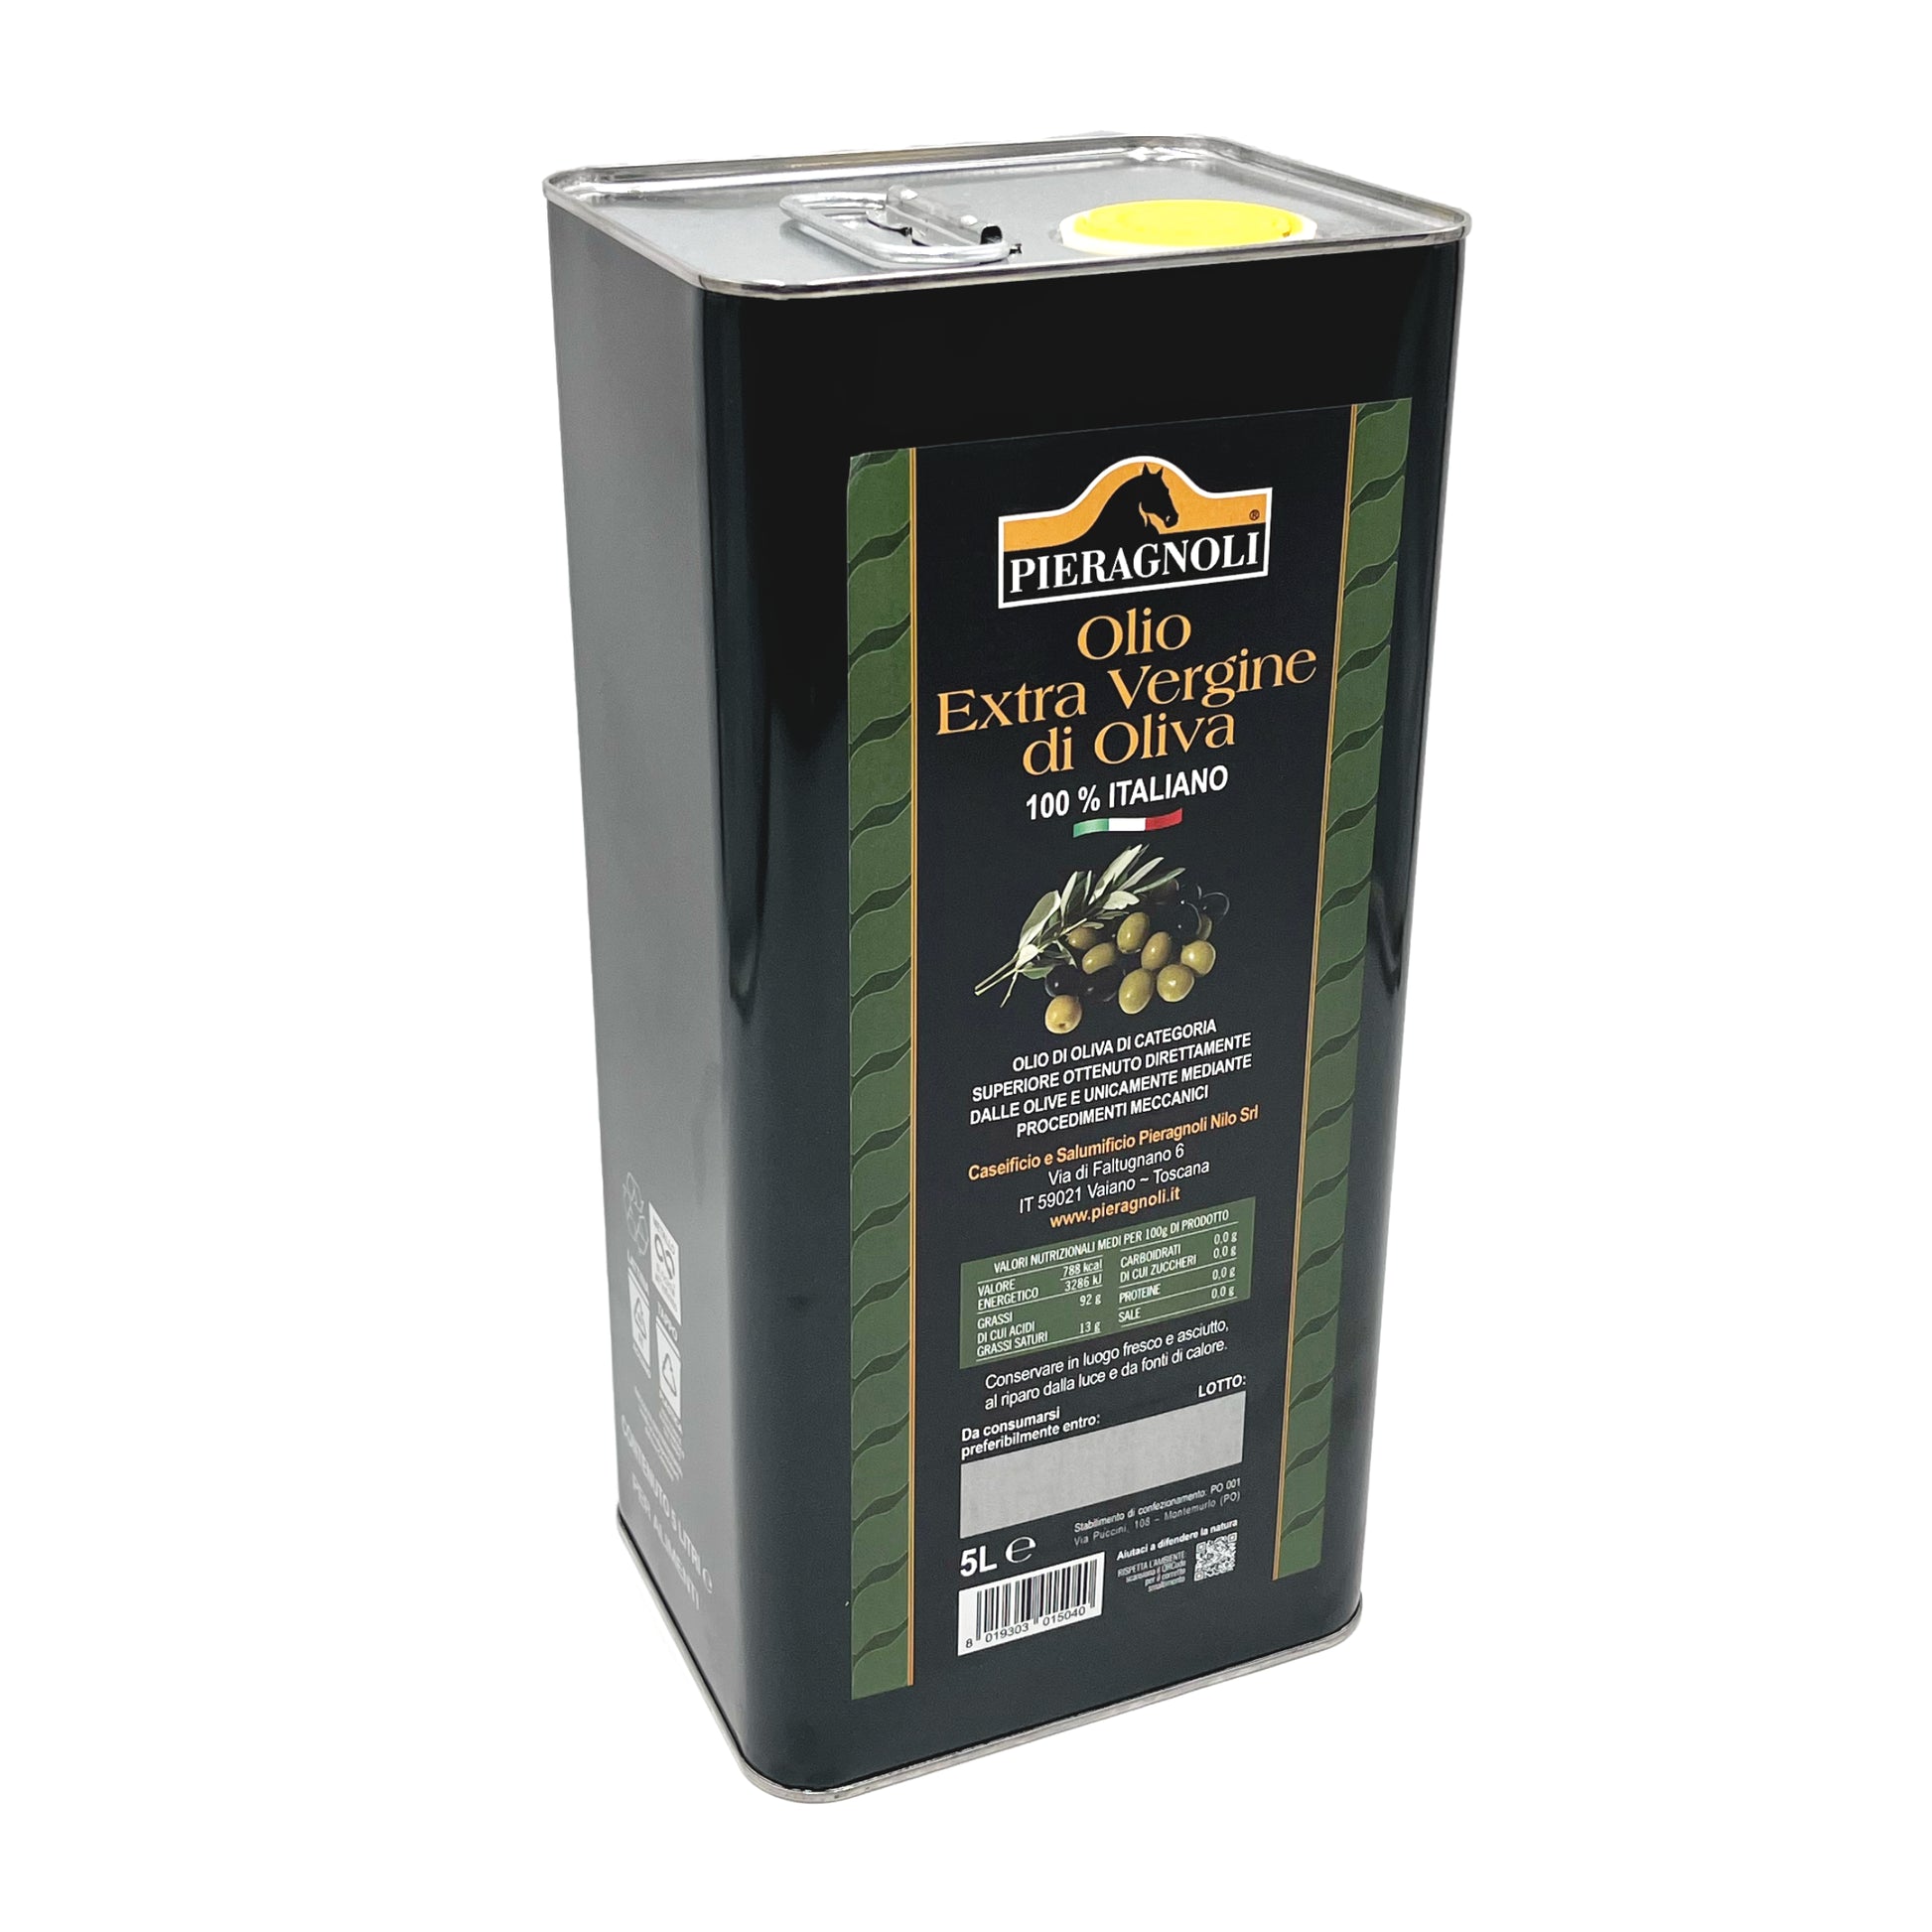 olio extravergine di oliva in latta pieragnoli 5 litri Olio di oliva di categoria superiore ottenuto direttamente dalle olive e unicamente con procedimenti meccanici